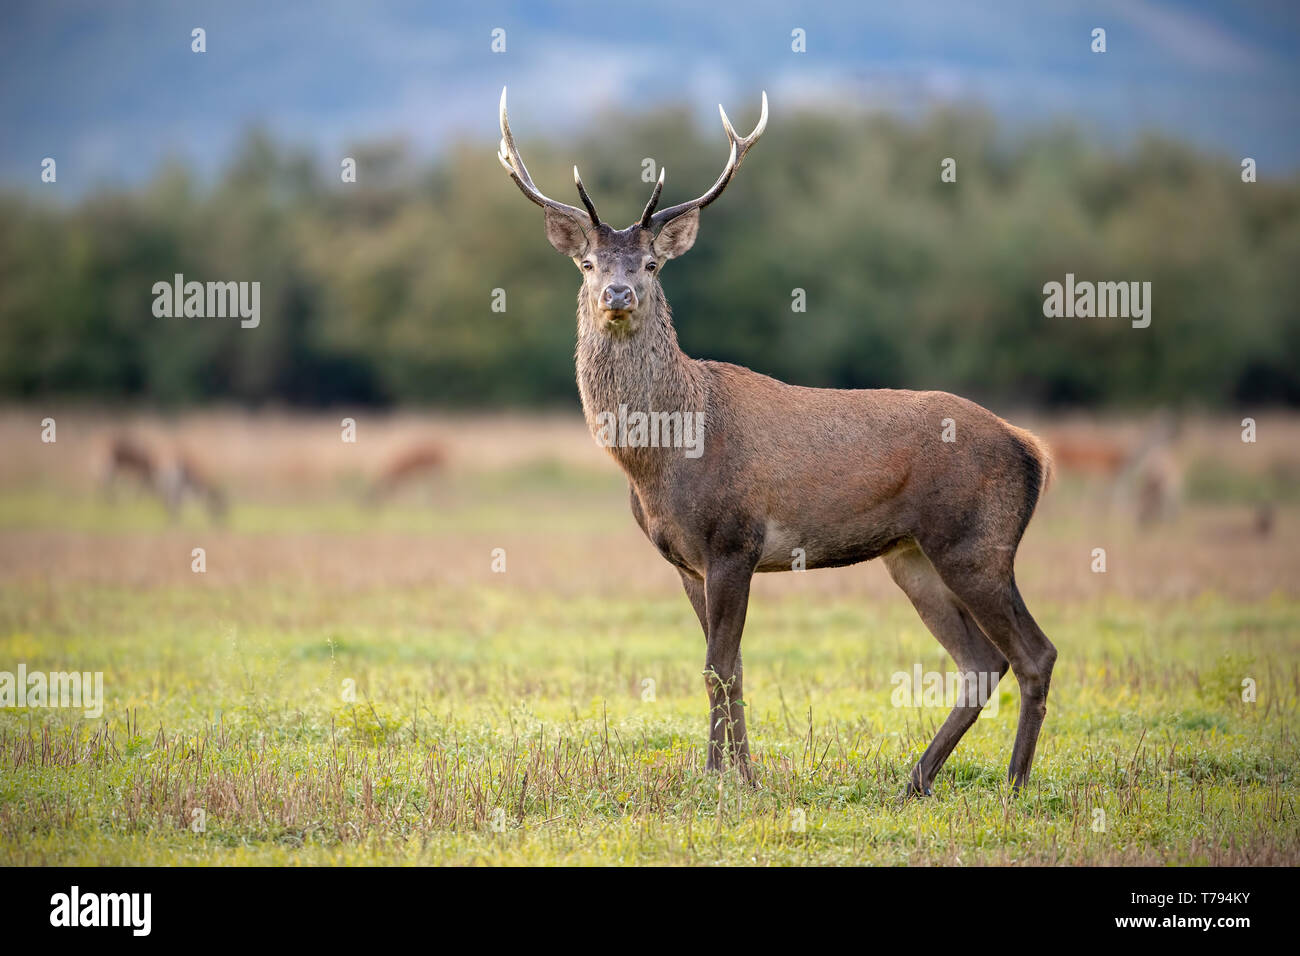 Les jeunes red deer, Cervus elaphus, stag en automne, regardant avec reste du troupeau en arrière-plan. Animaux sauvages dans la nature. Banque D'Images